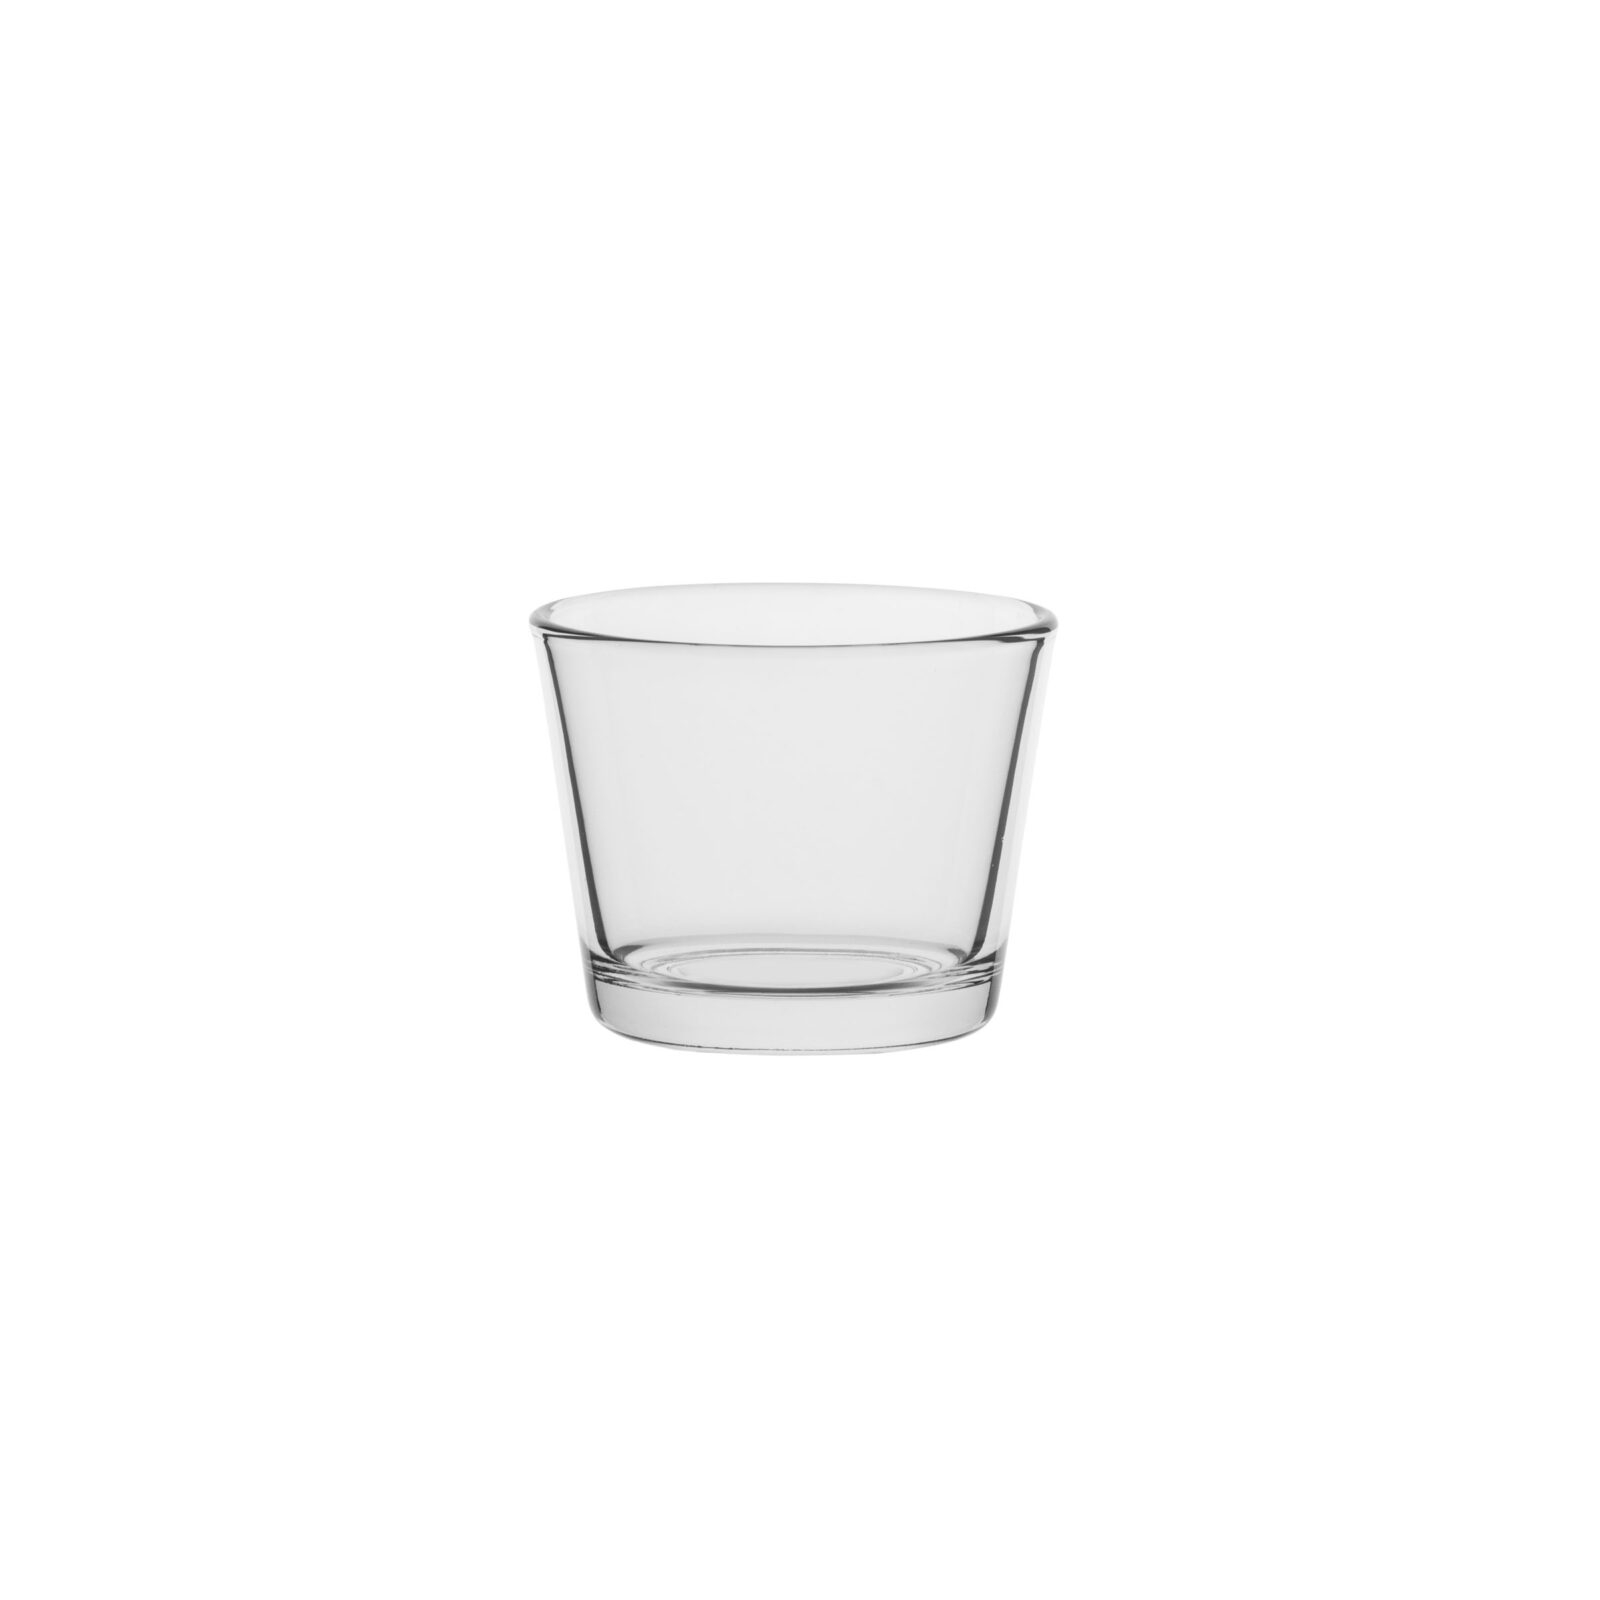 Szklanka pojemnik szklany do świec 70028 przezroczysty 130 ml kpl. 6 szt.